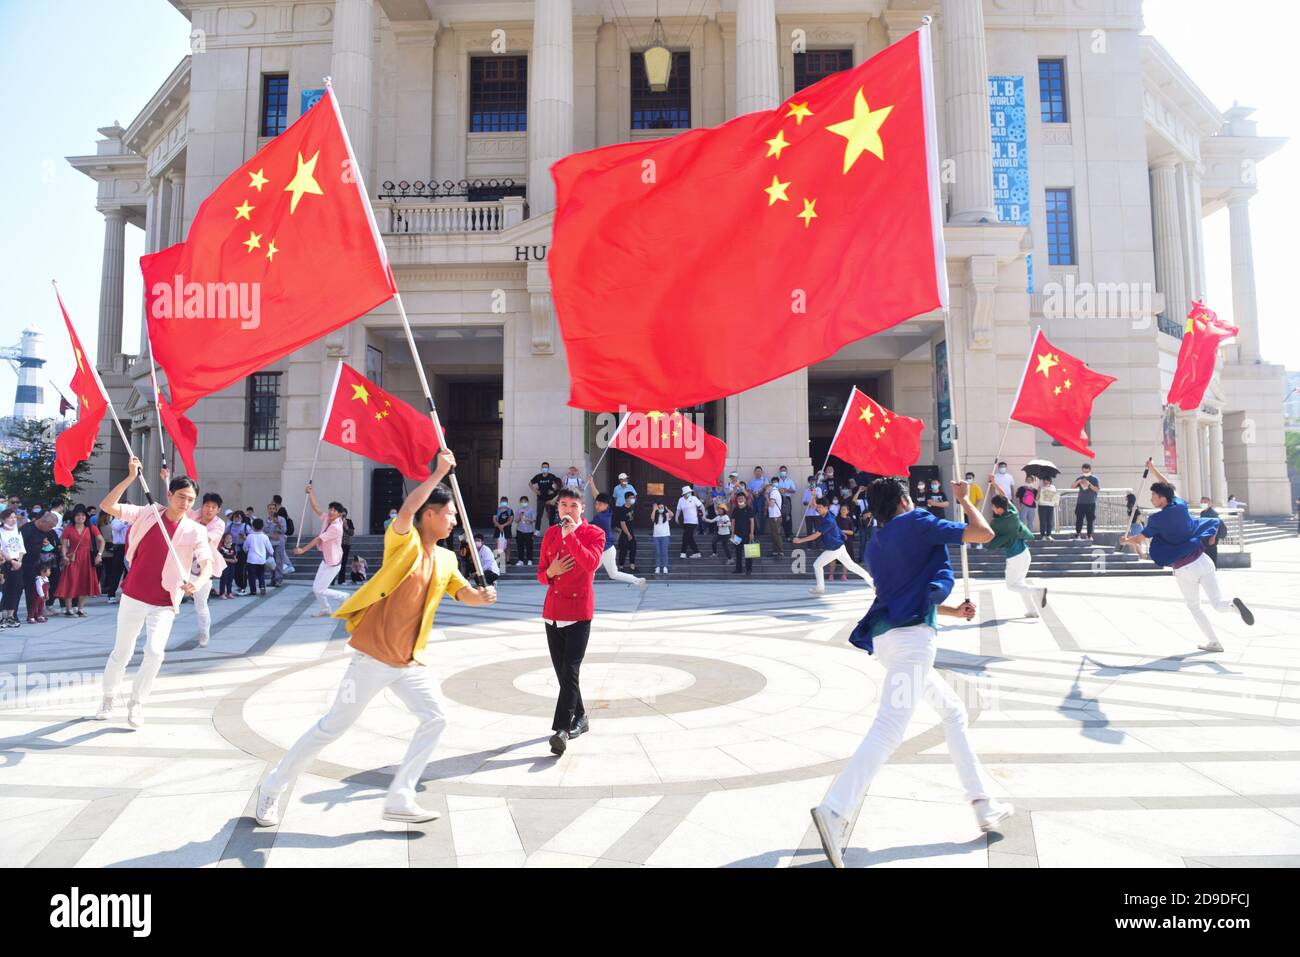 Menschen halten chinesische Flaggen auf der Welt des Films der Brüder Huayi in Suzhou, der ostchinesischen Provinz Jiangsu, 2. Oktober 2020. Stockfoto